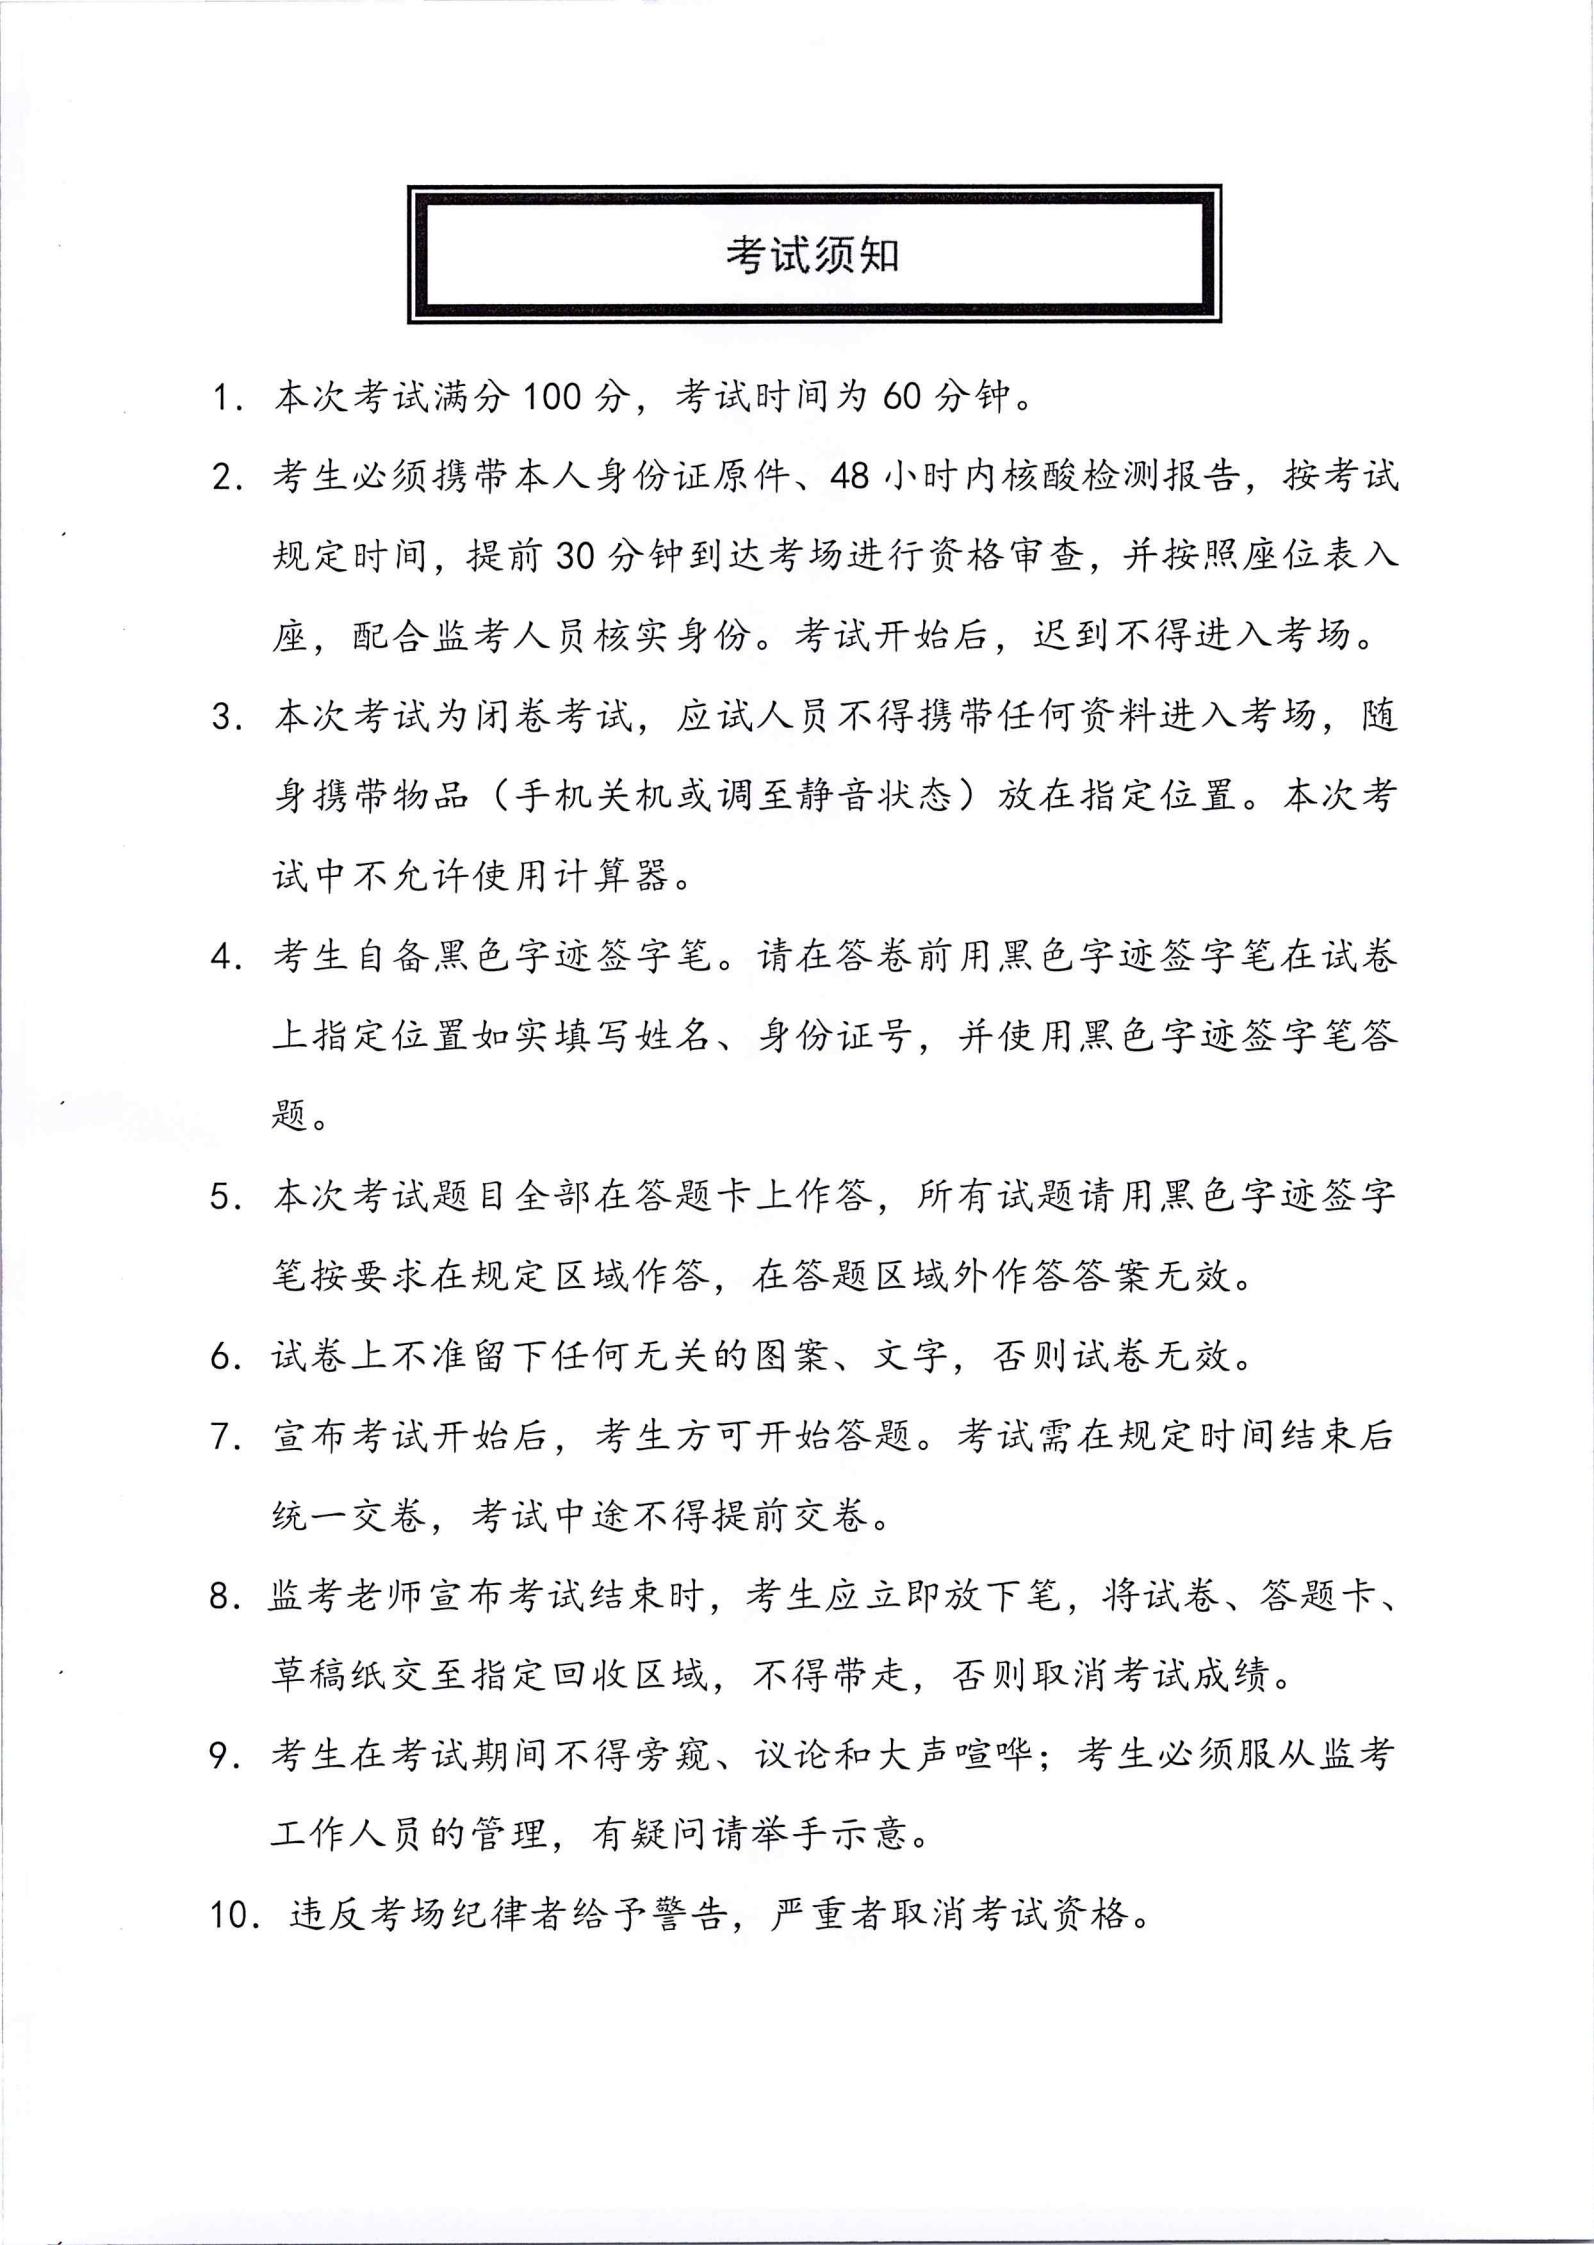 完美体育app(中国)股份有限公司官网有限公司2022年第一批社会公开招聘笔试公告_05.jpg